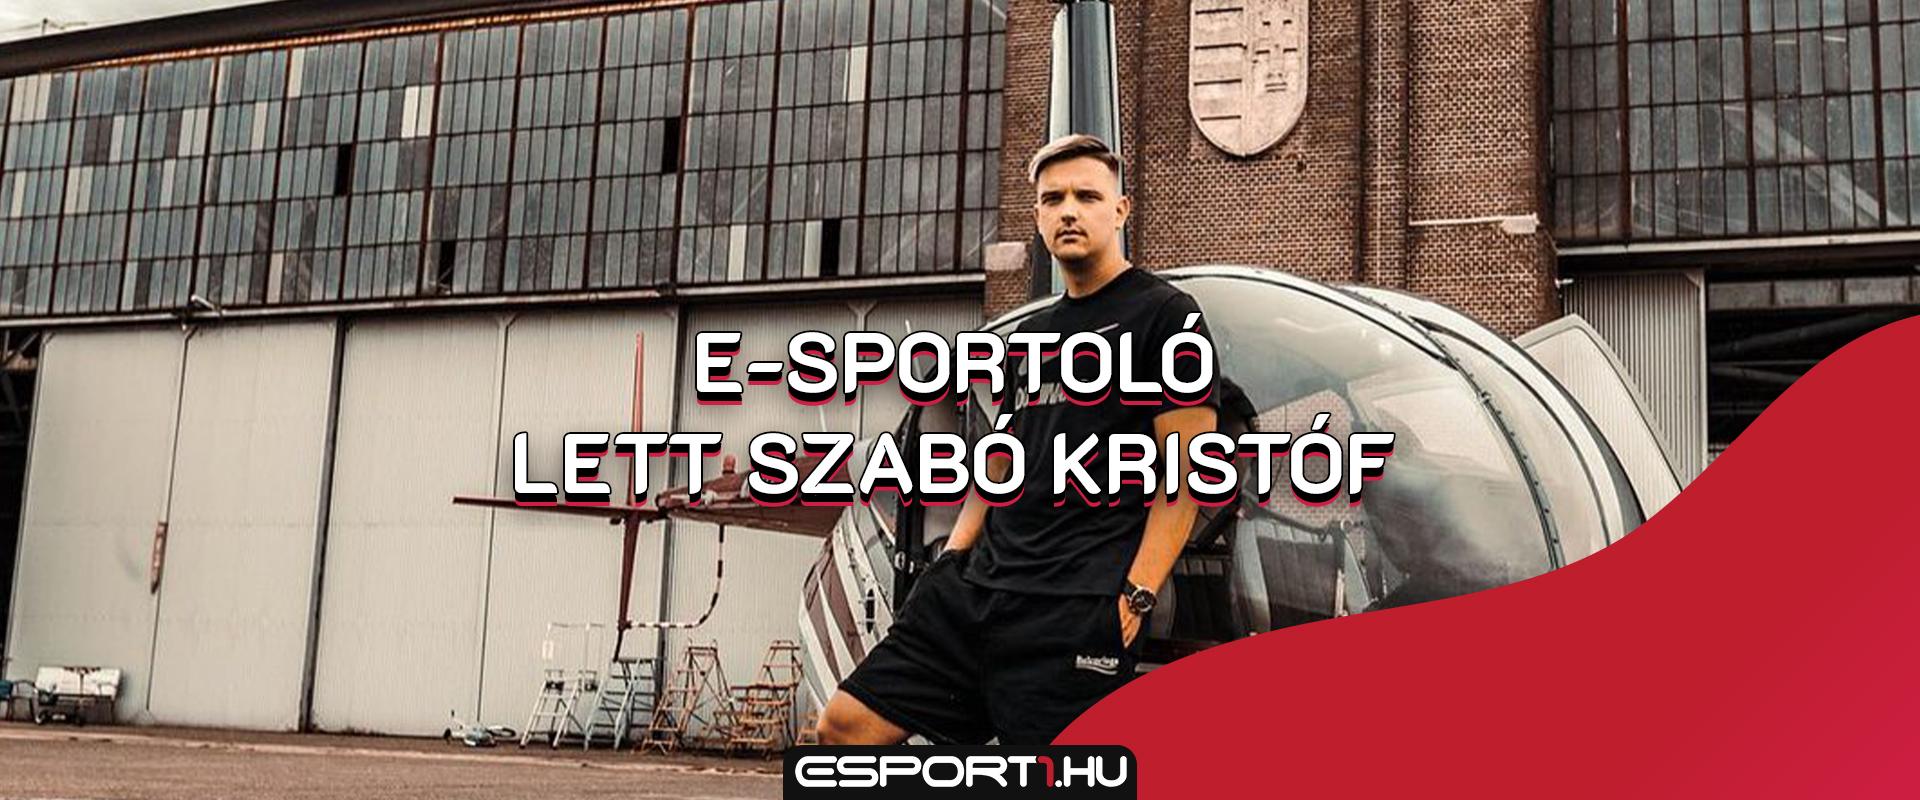 Profi e-sportolóként folytatja aszabokristof, a magyar Warzone királya